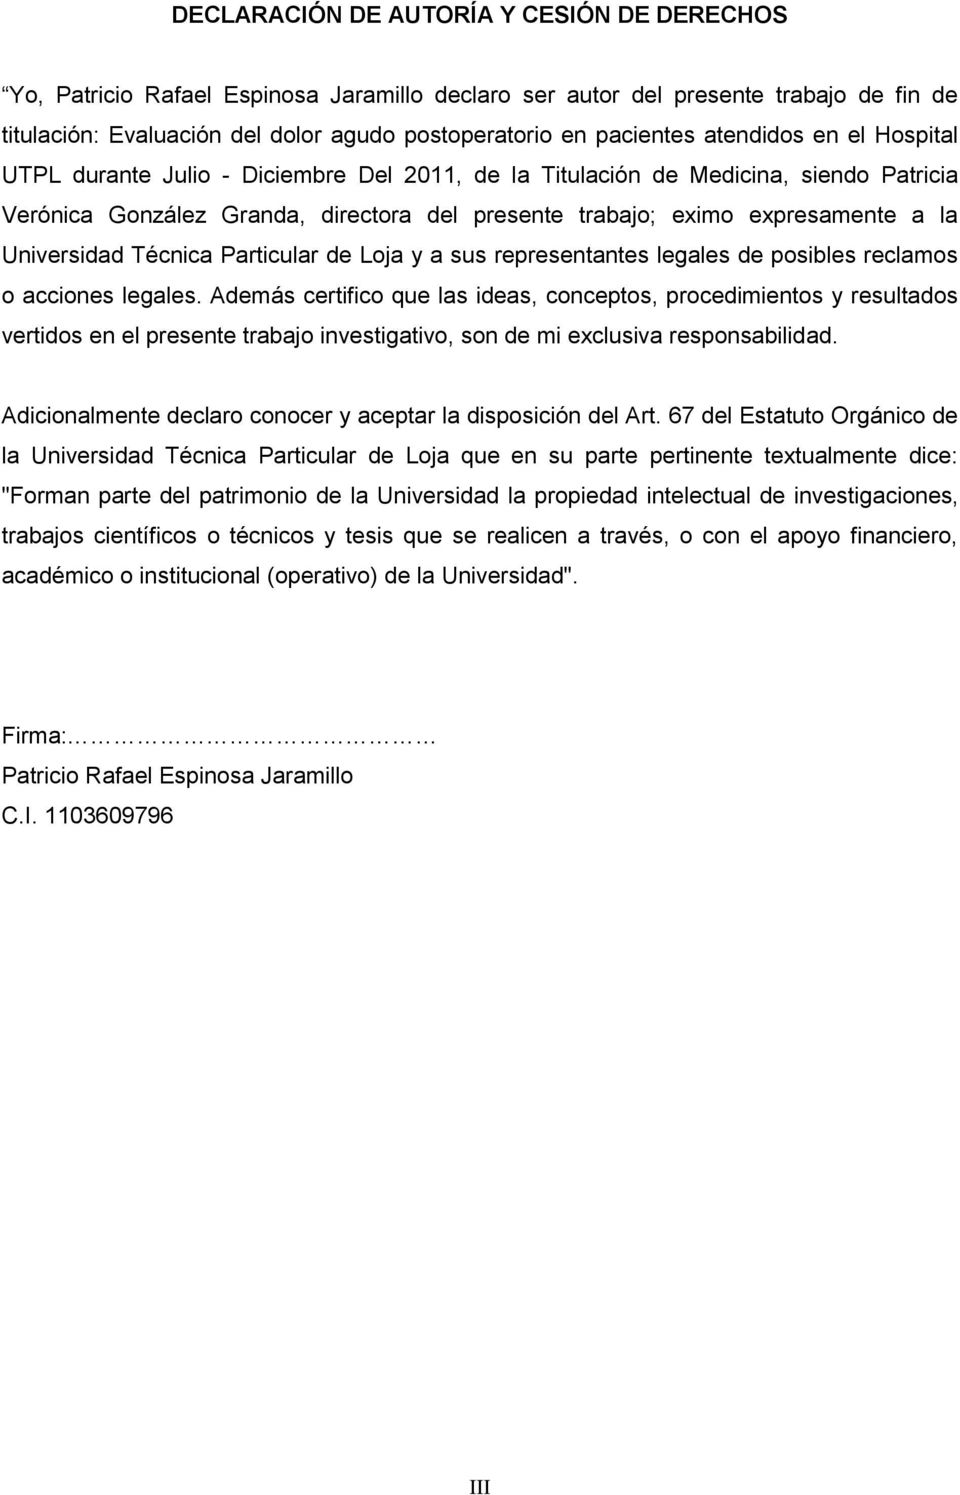 Universidad Técnica Particular de Loja y a sus representantes legales de posibles reclamos o acciones legales.